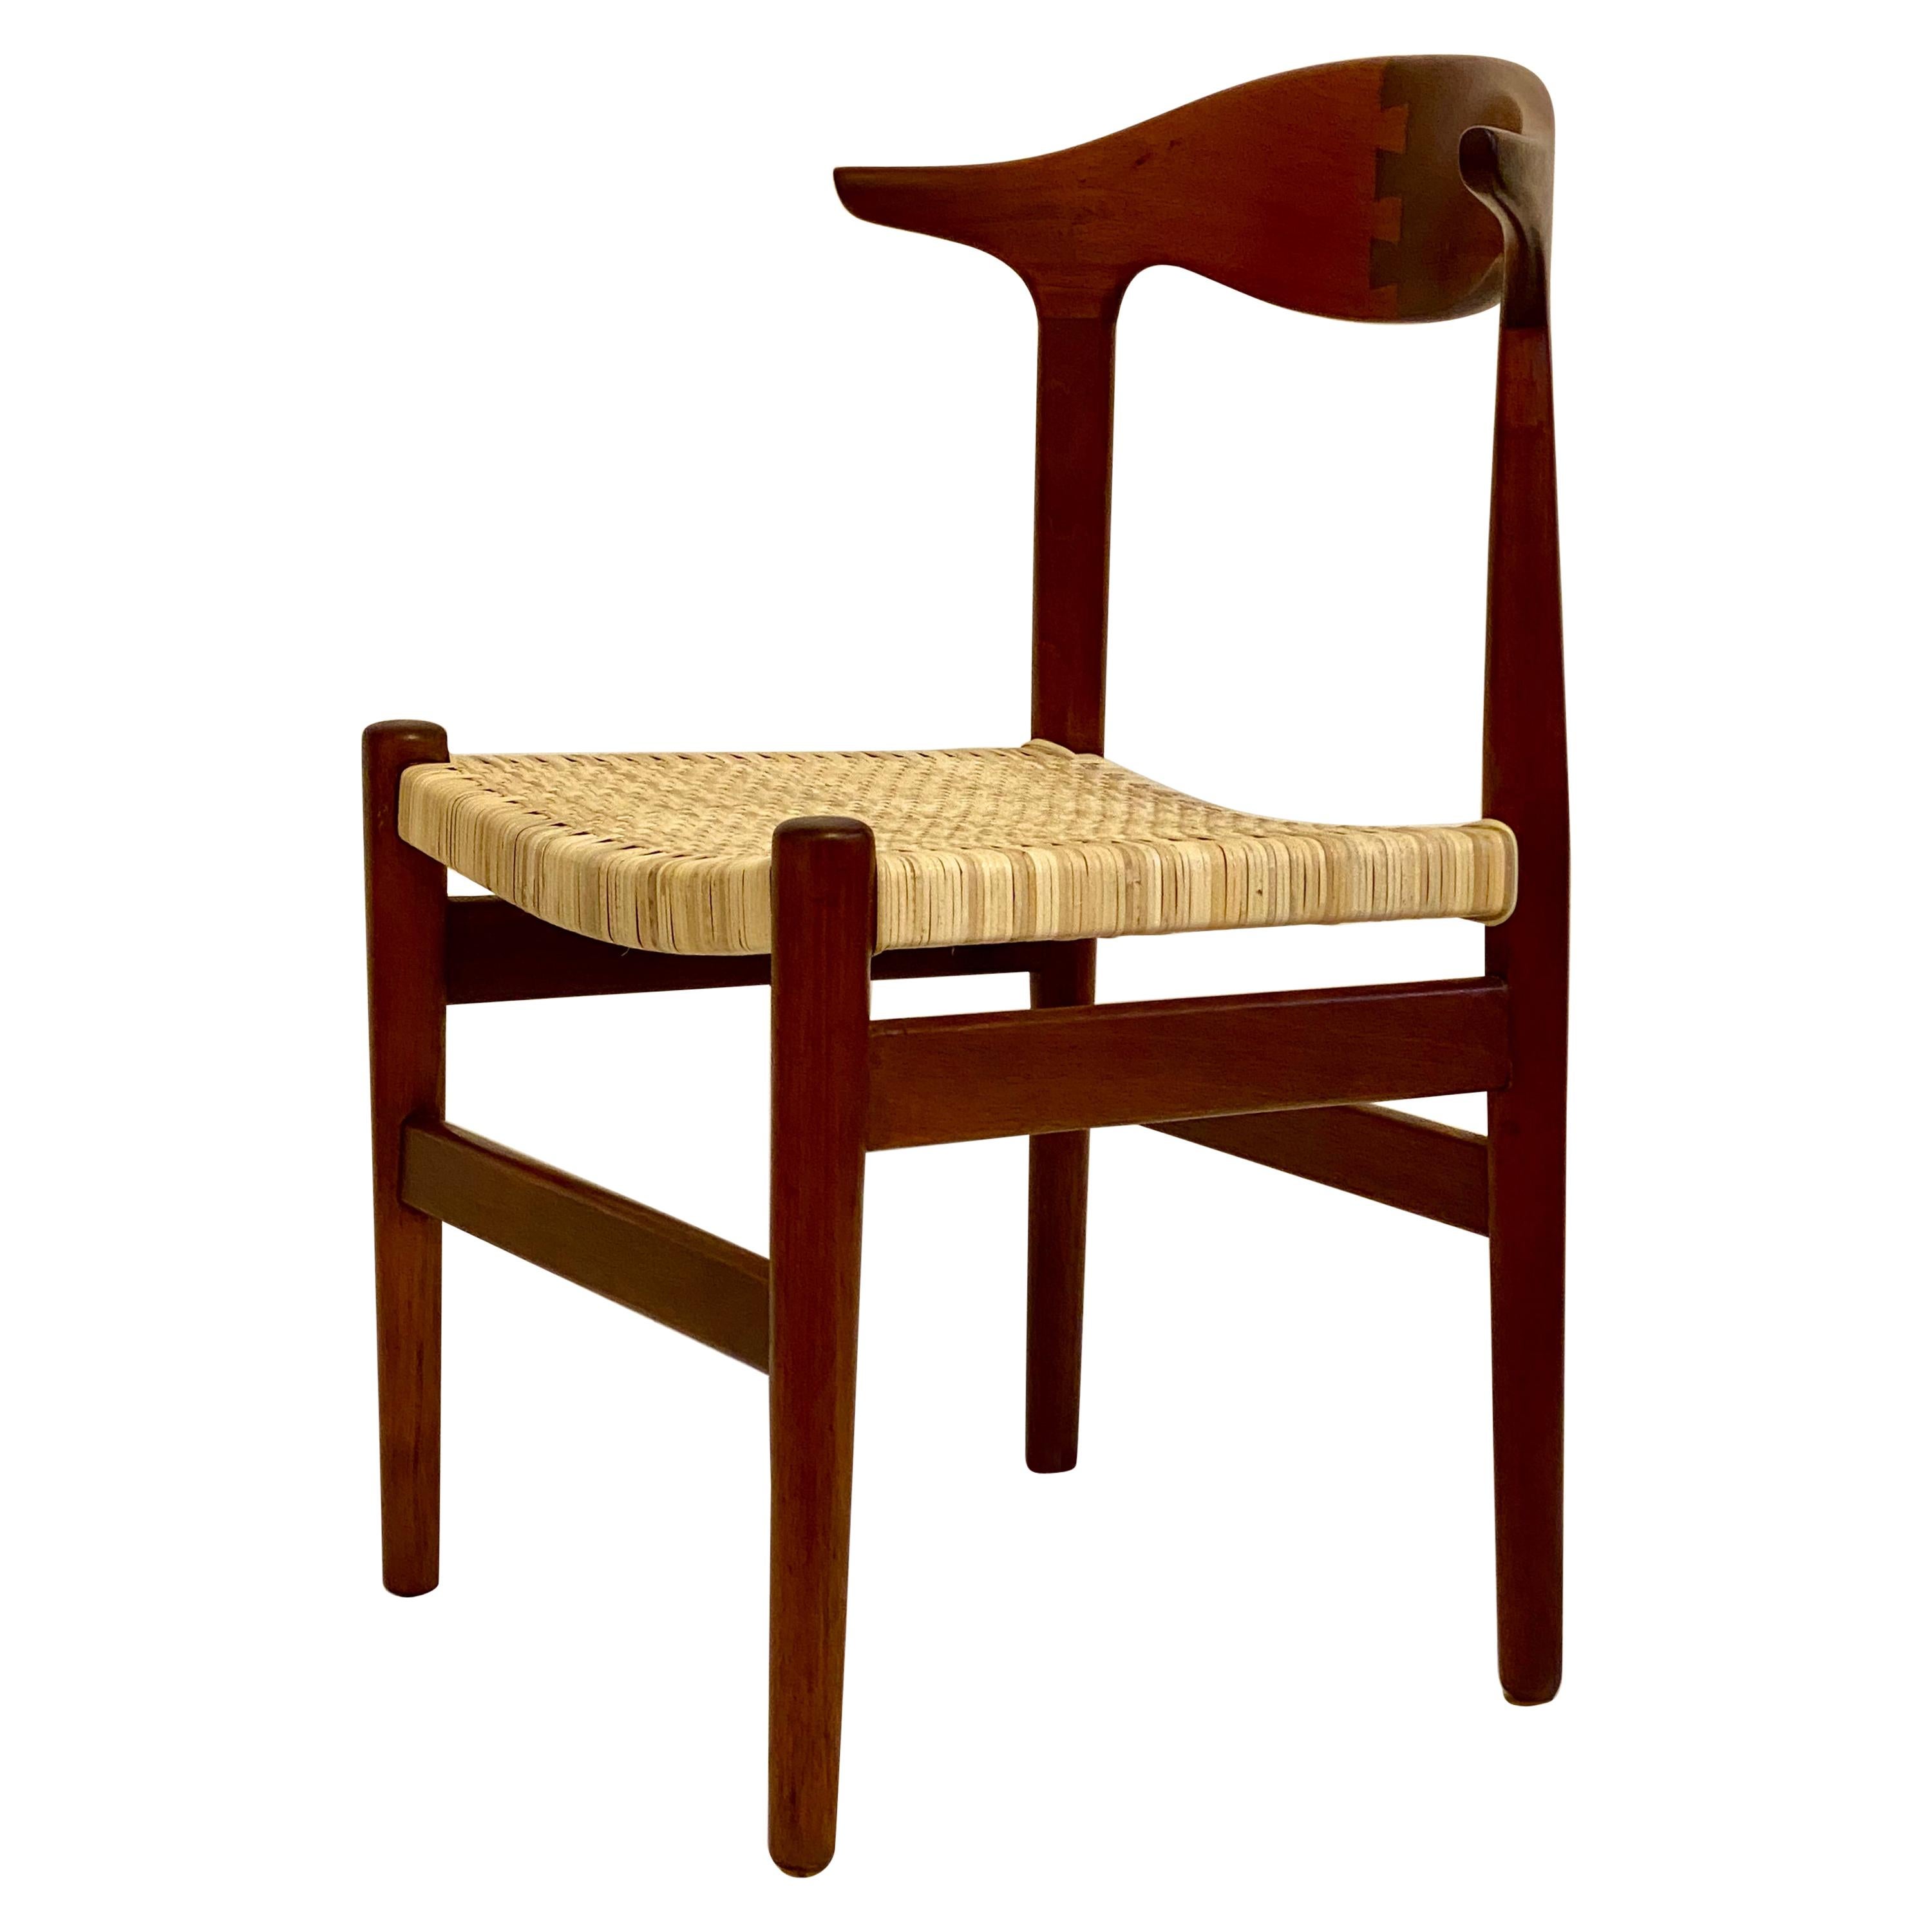 Scandinavian Modern Cow Horn Chair Attributed to Hans Wegner